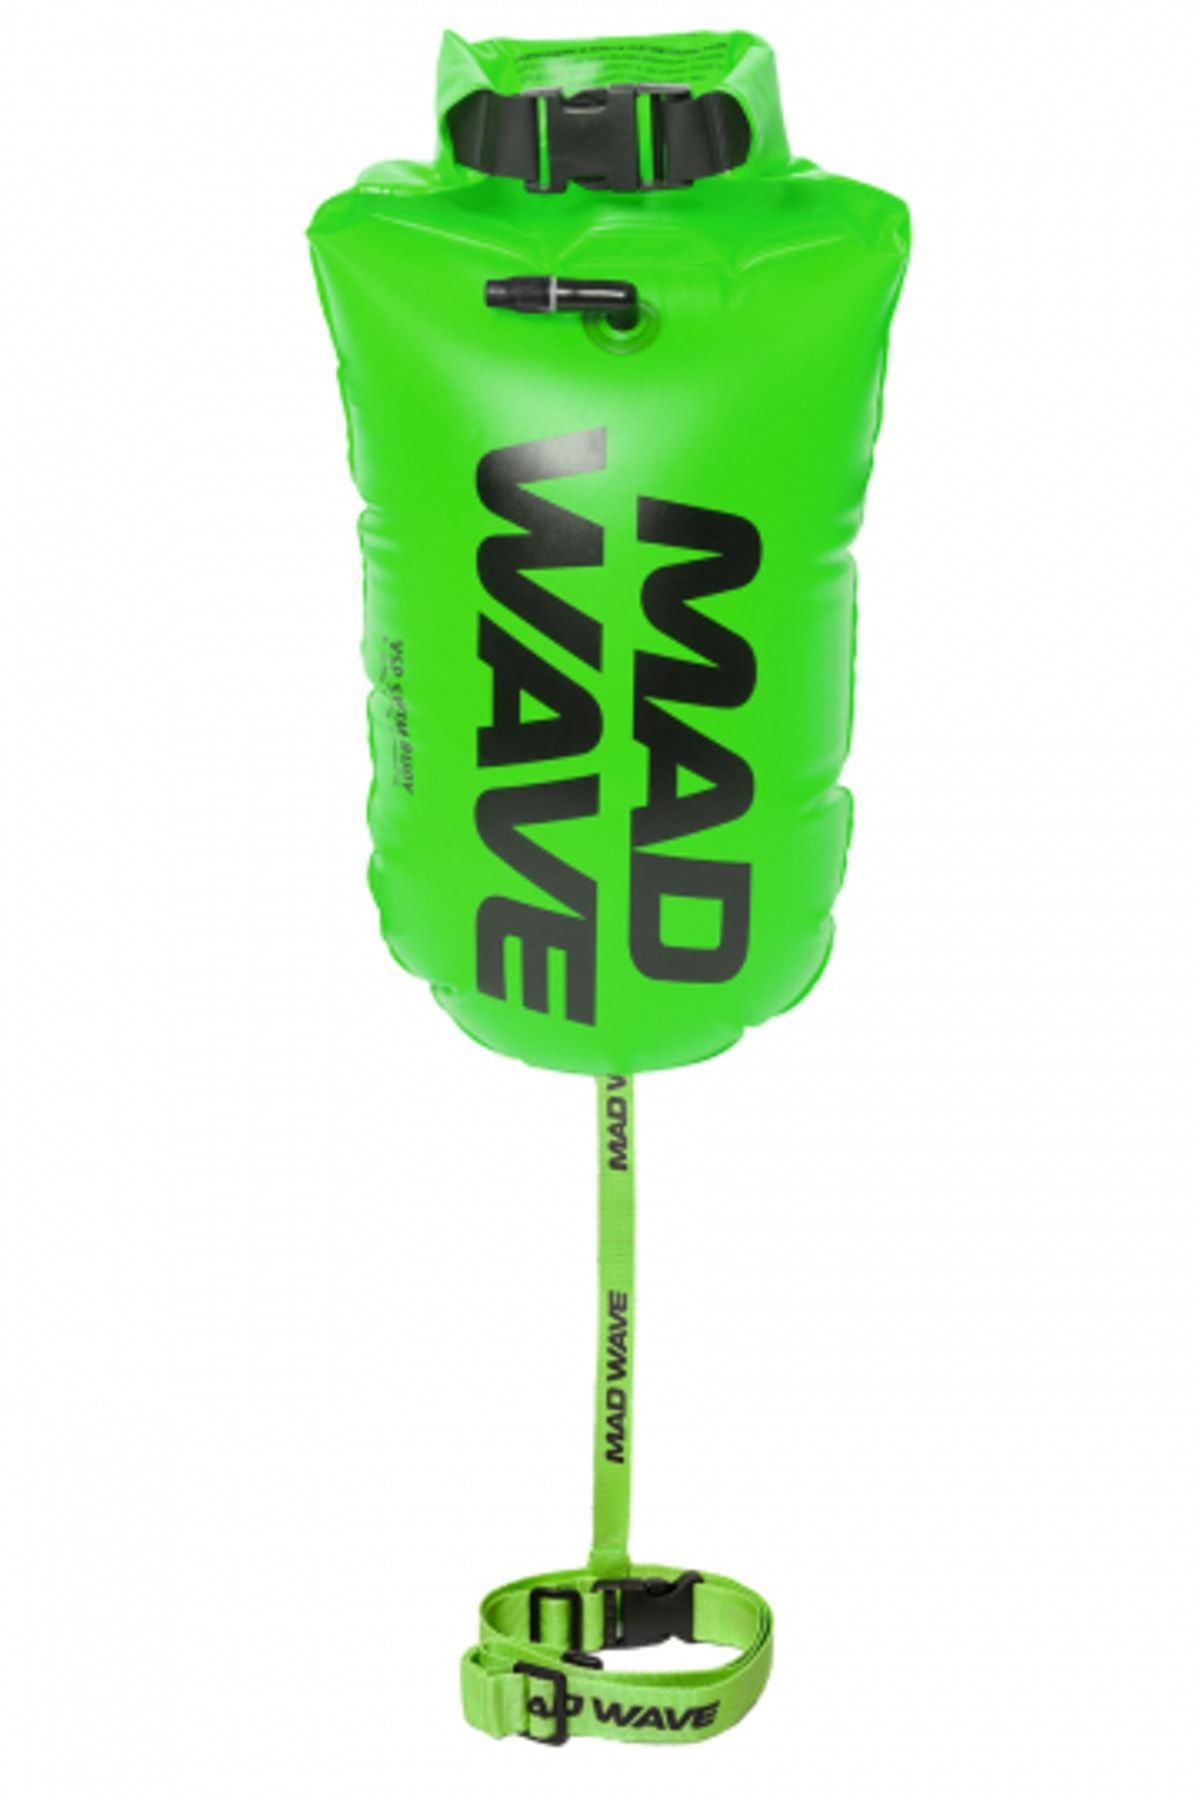 Mad Wave Açık Su Yüzme Şamandırası Yeşil (çantalı)